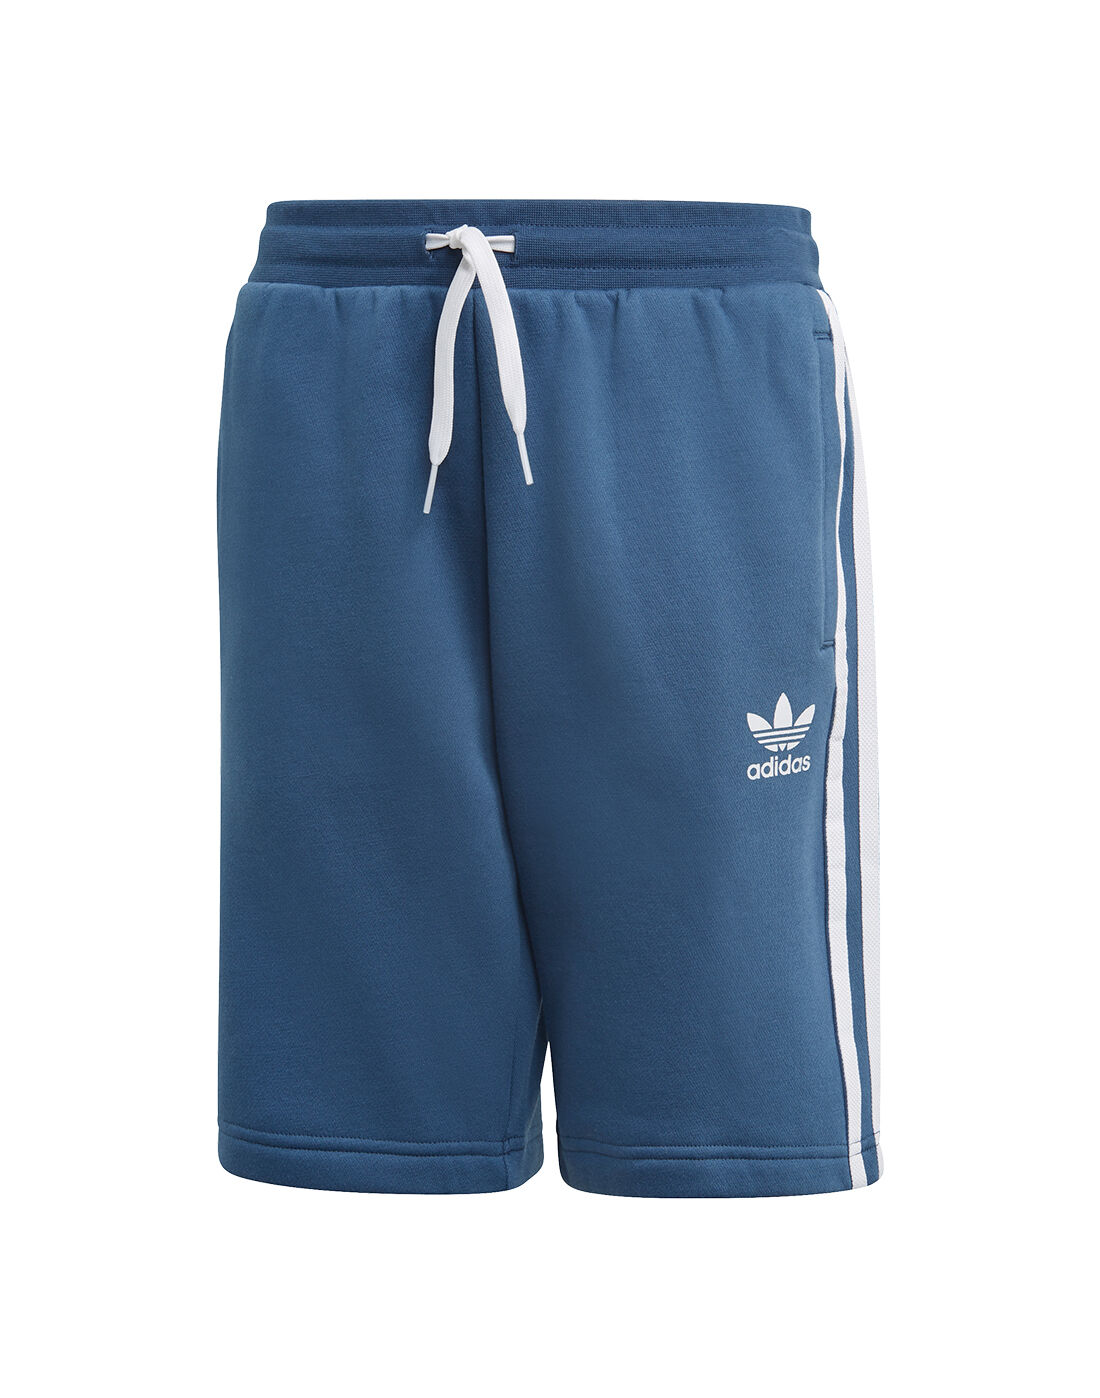 boys blue adidas shorts